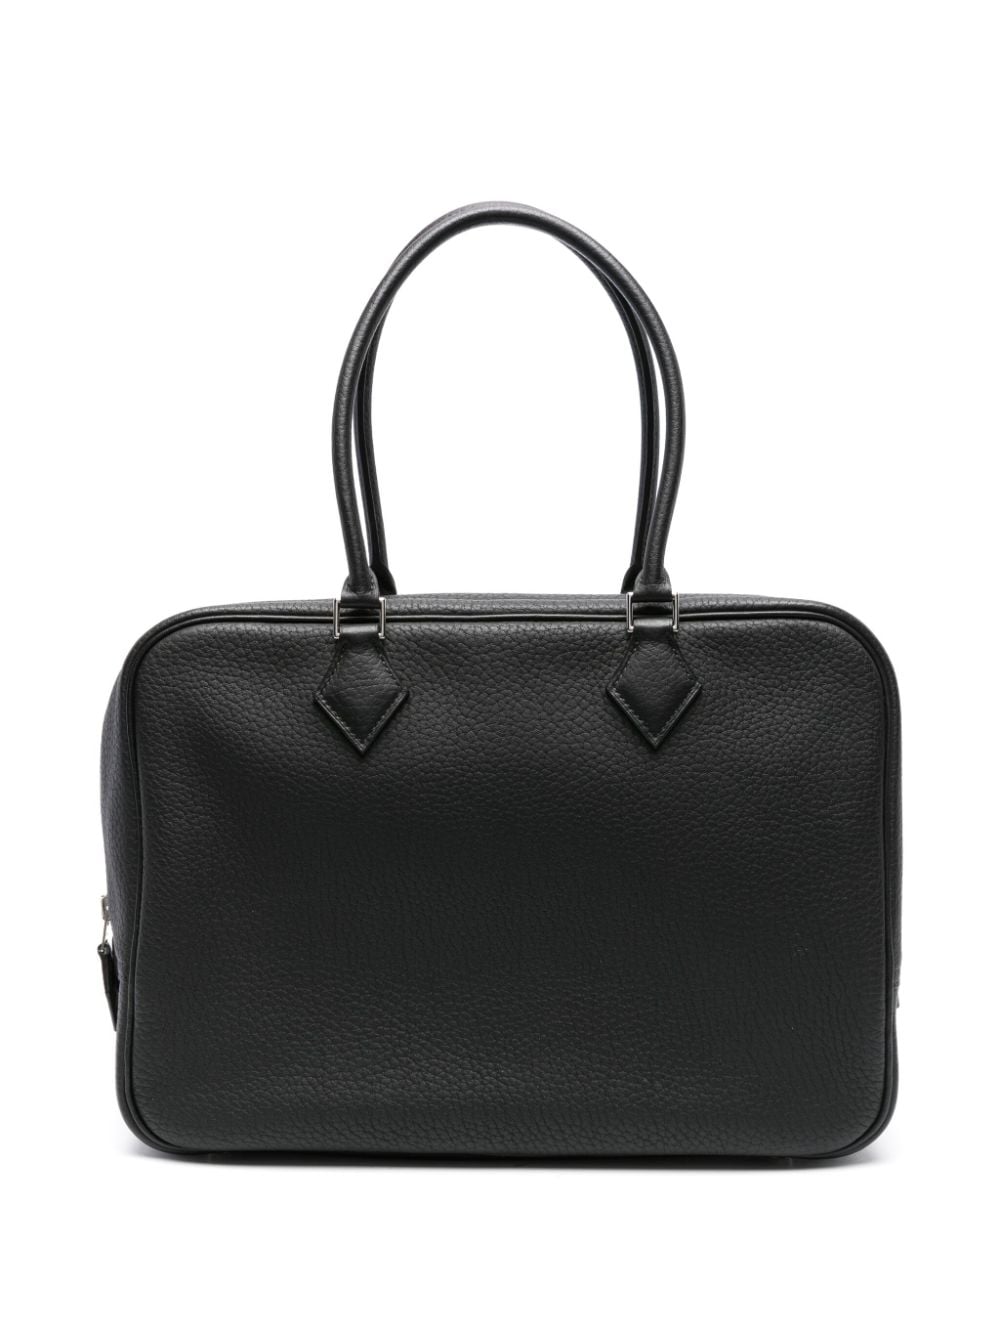 Hermès Pre-Owned 2006 Plume handbag - Grey von Hermès Pre-Owned